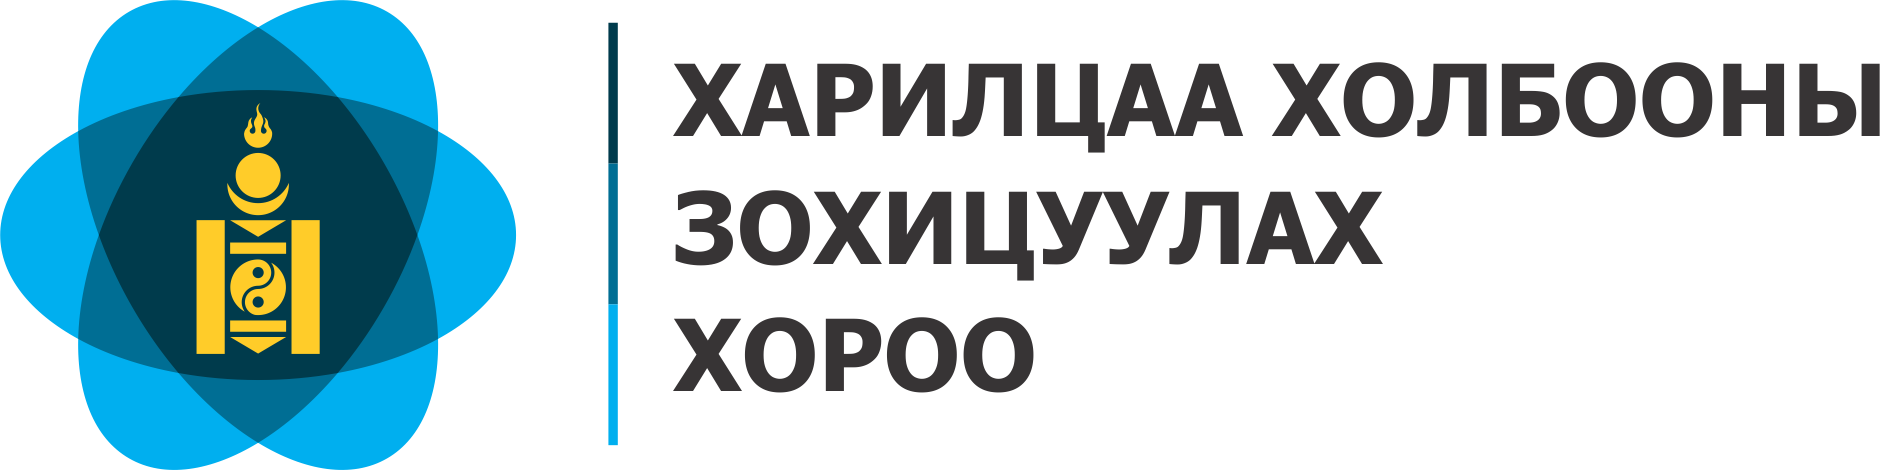 Монголын Үндэсний Олон Нийтийн Радио, Телевизээр нэвтрүүлэх 2023 оны Аймаг, нийслэл, сум, дүүргийн ИТХ-ын нөхөн болон дахин сонгуулийн сурталчилгааны нэвтрүүлгийн цагийн хуваарь